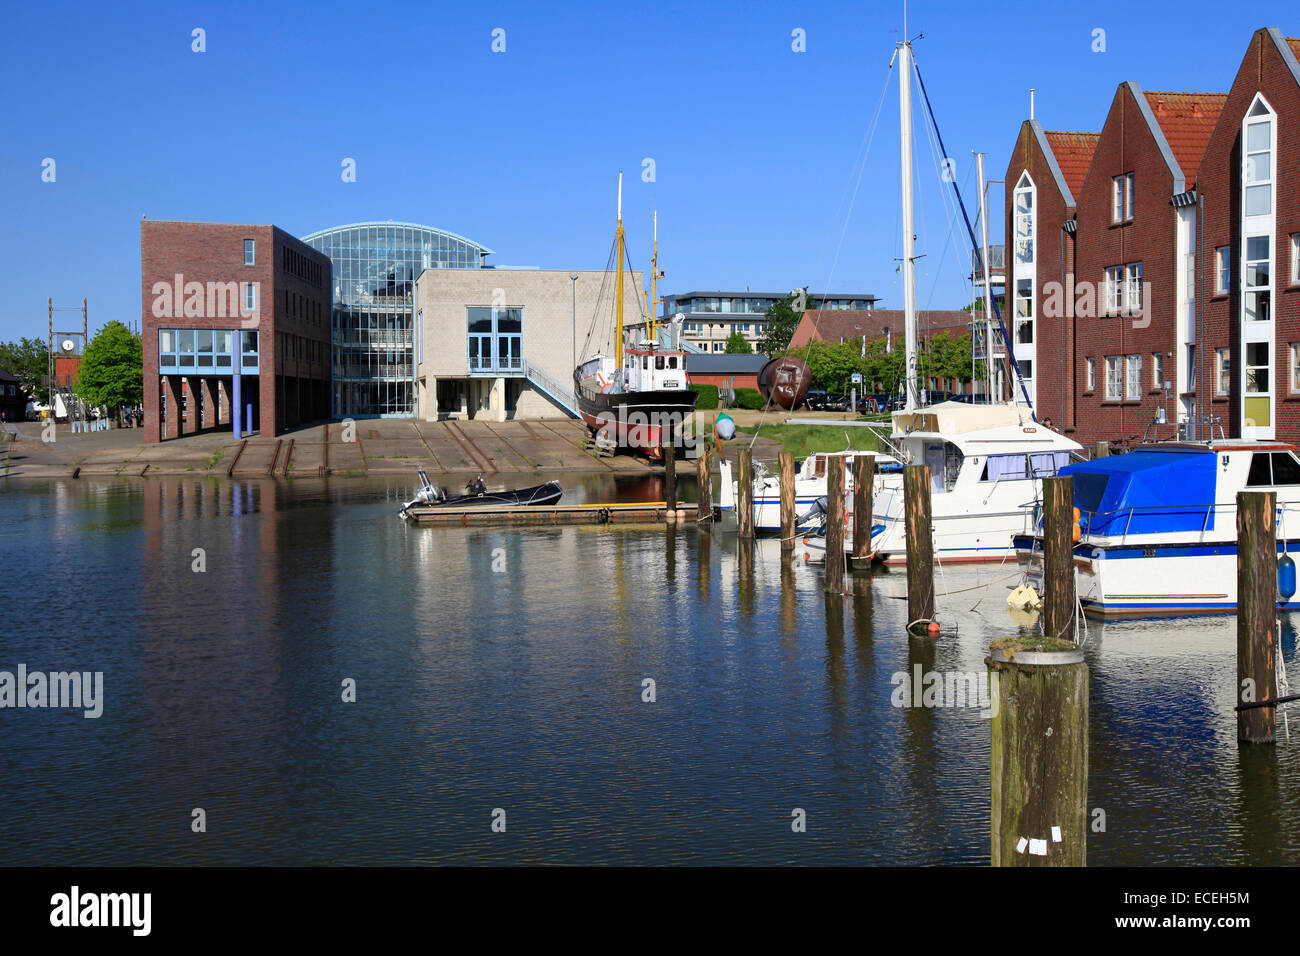 El puerto interior de Husum. Es la capital del distrito de Frisia septentrional en Schleswig-Holstein. Husum está situado en la costa del Mar del Norte. Foto: Klaus Nowottnick Fecha: Mayo 27, 2012 Foto de stock